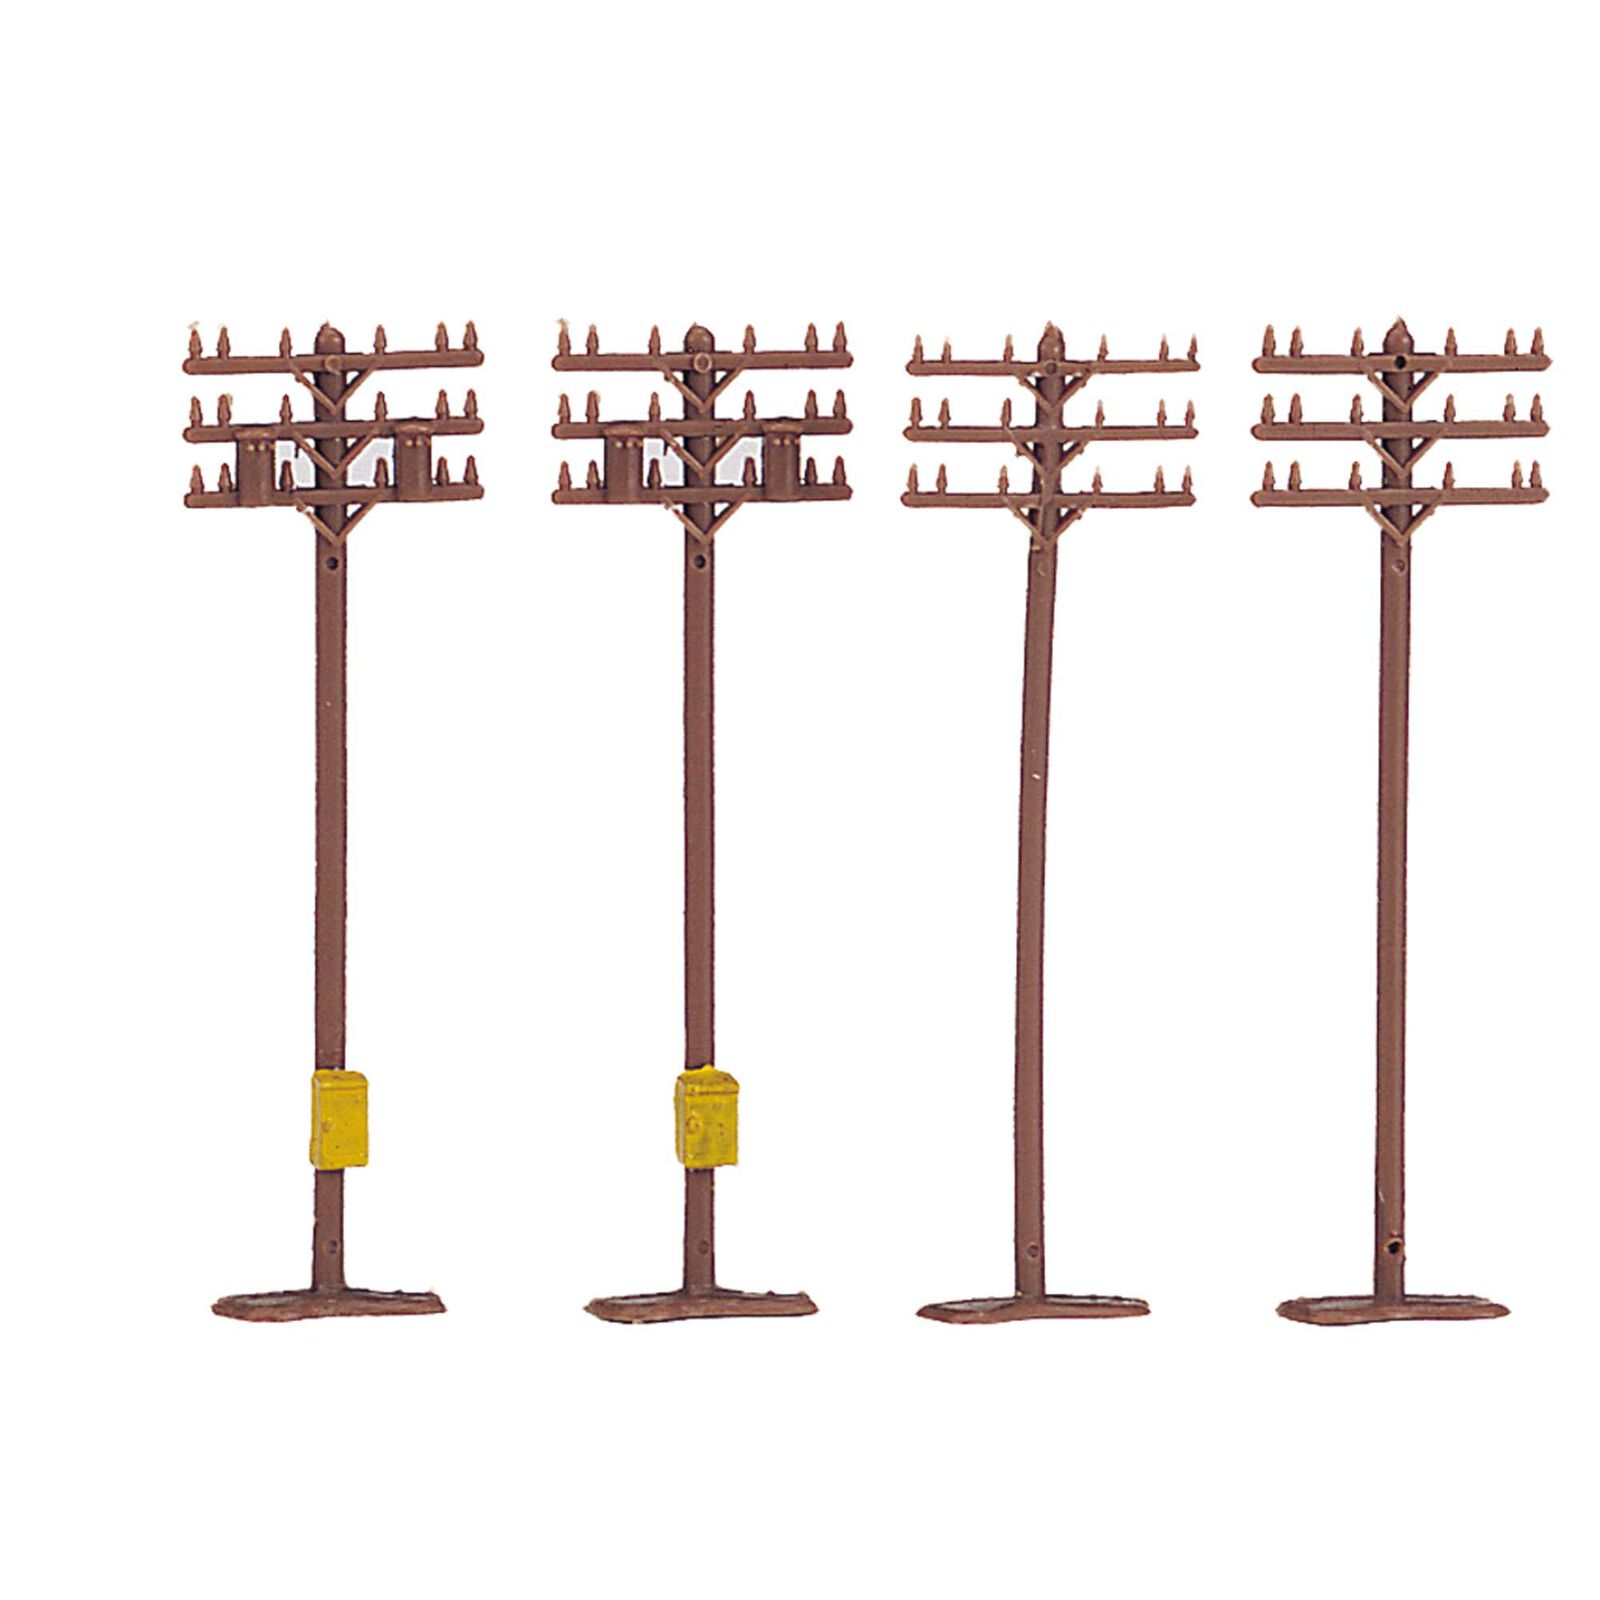 N Telephone Poles (12)